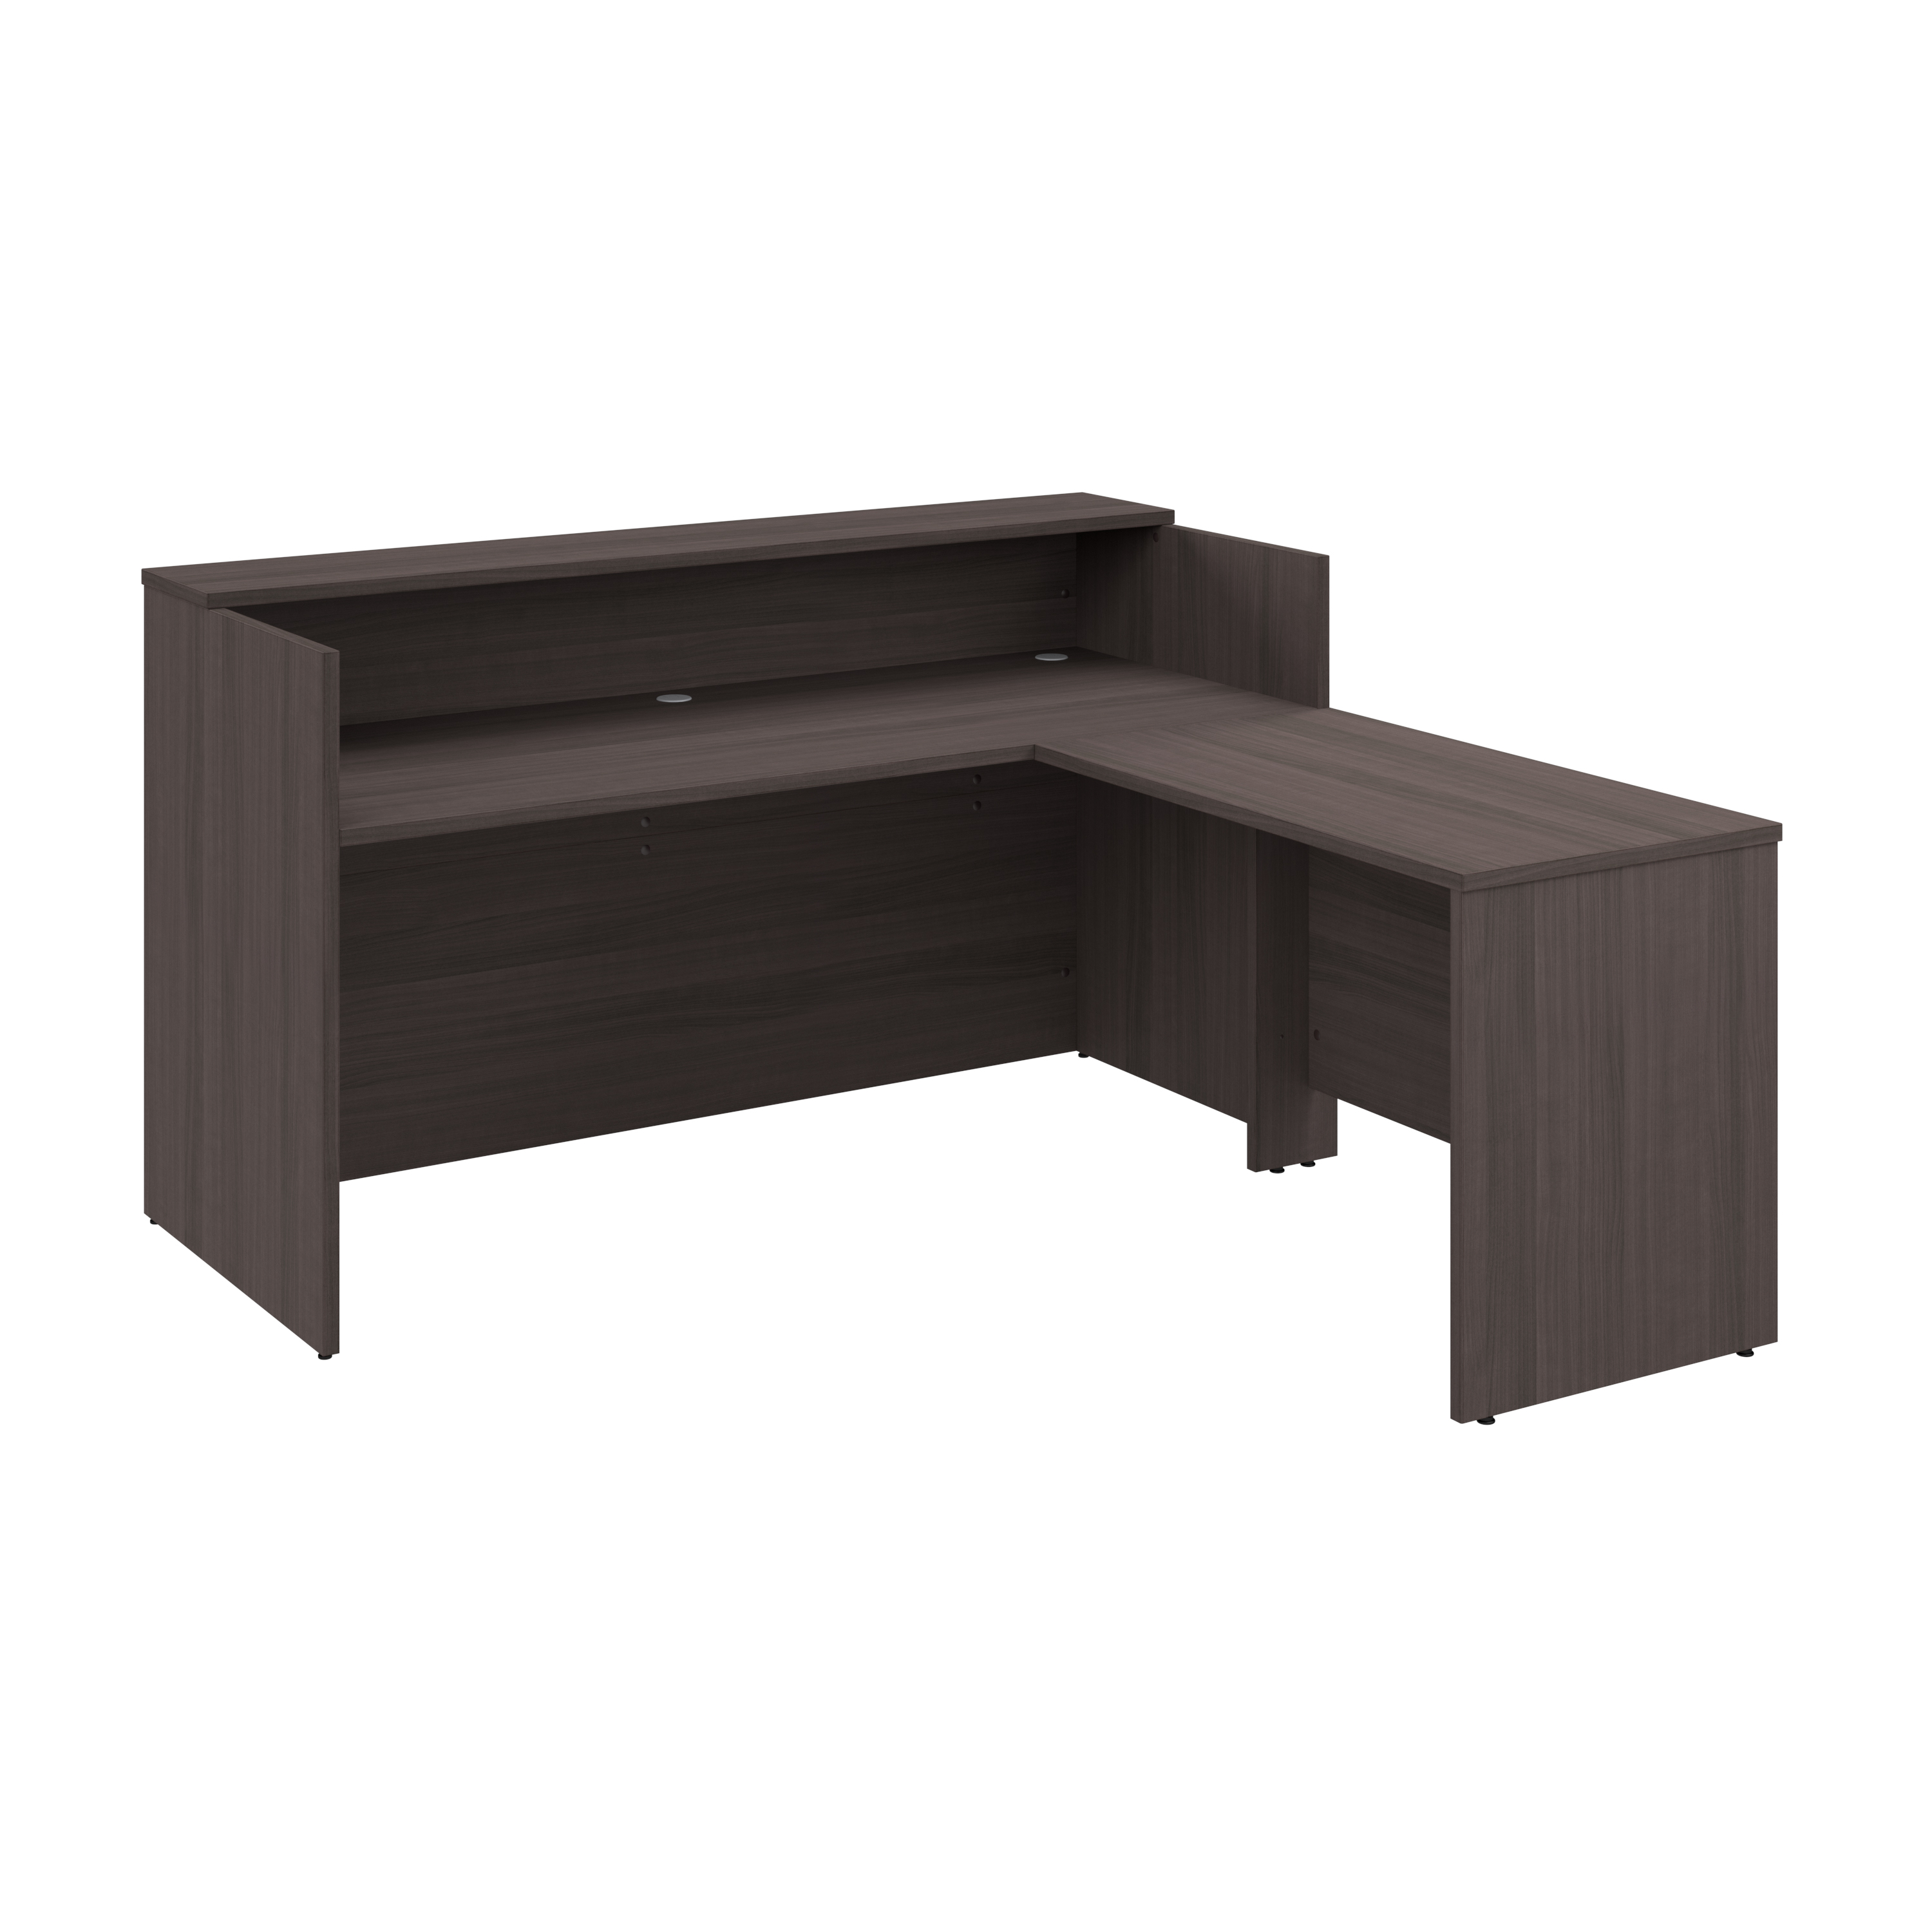 Shop Bush Business Furniture Arrive 72W x 72D L Shaped Reception Desk with Shelf 02 ARV006SG #color_storm gray